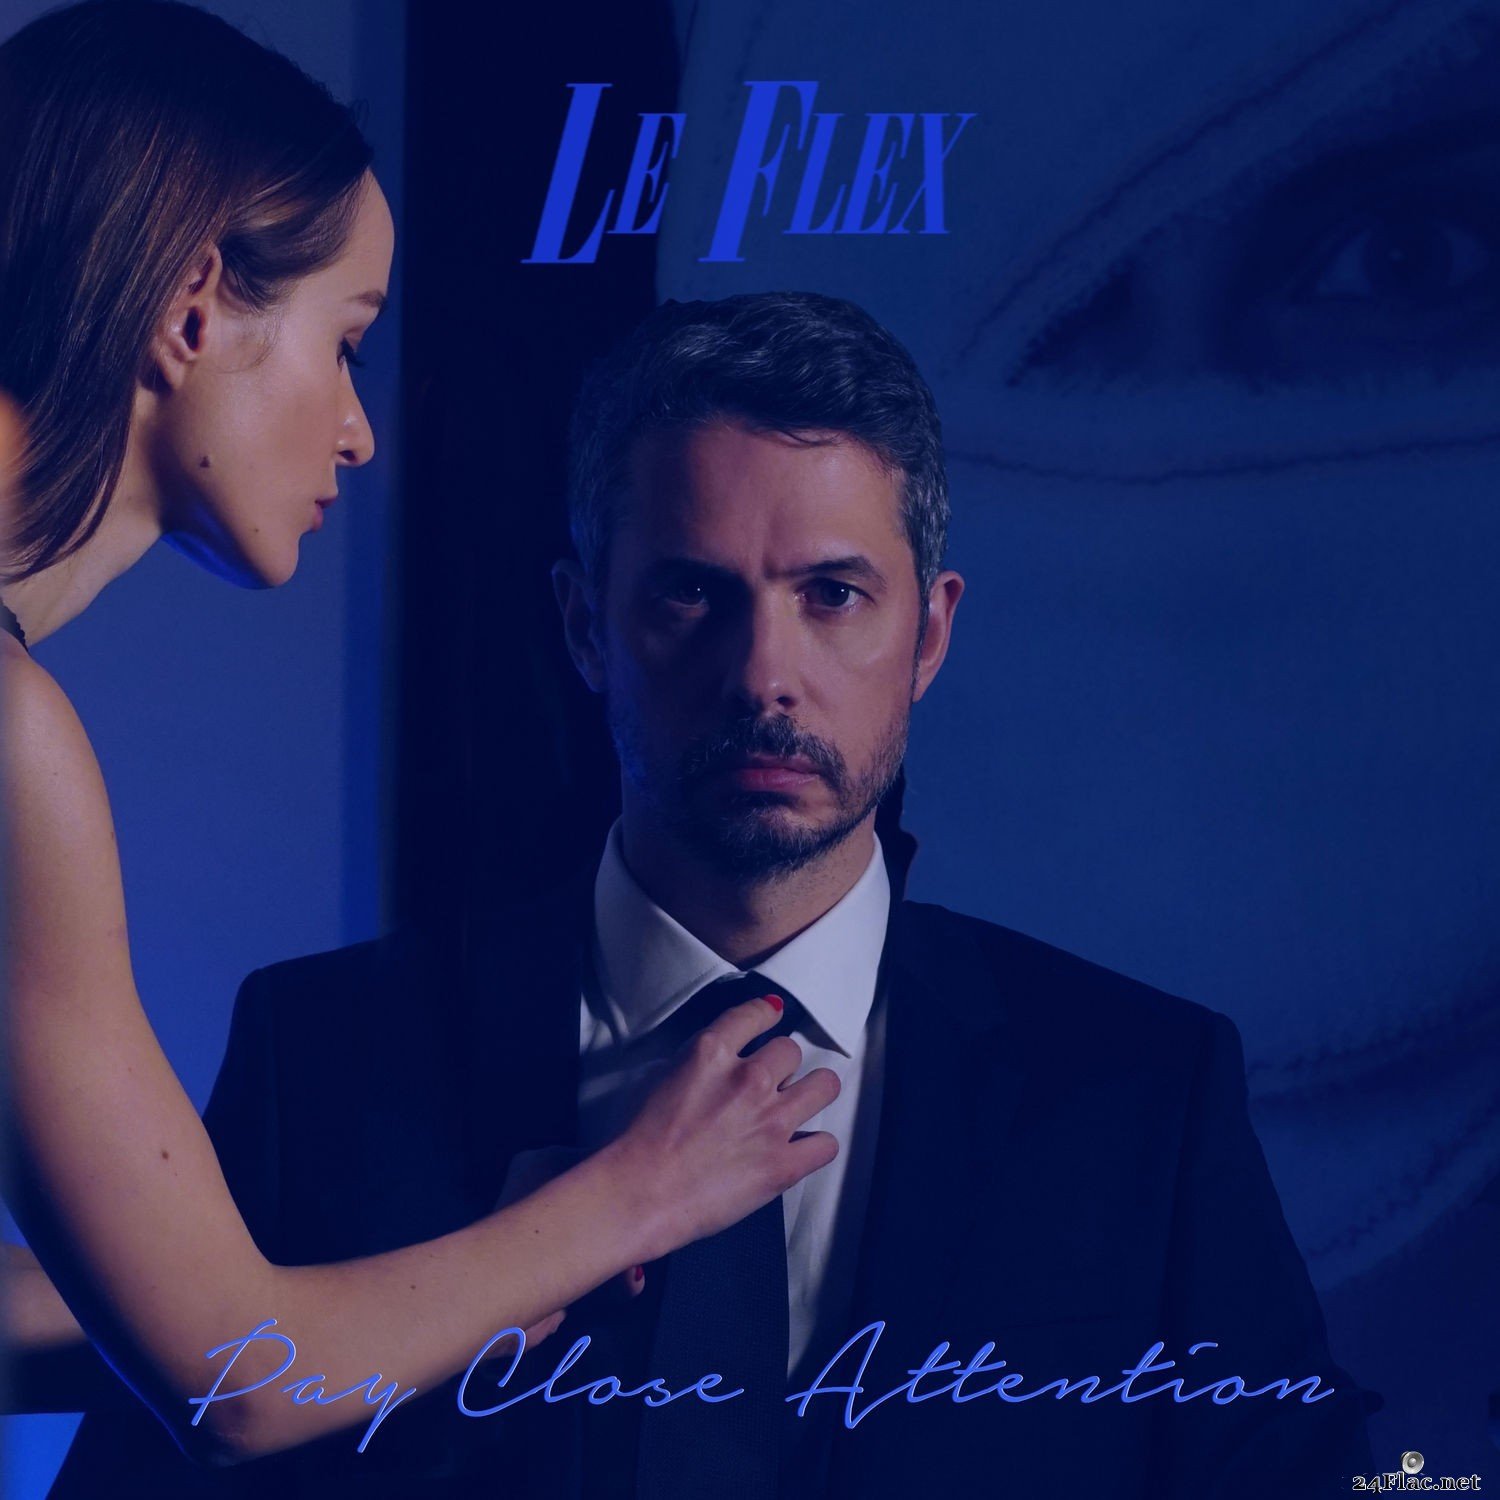 Le Flex - Pay Close Attention (2021) Hi-Res